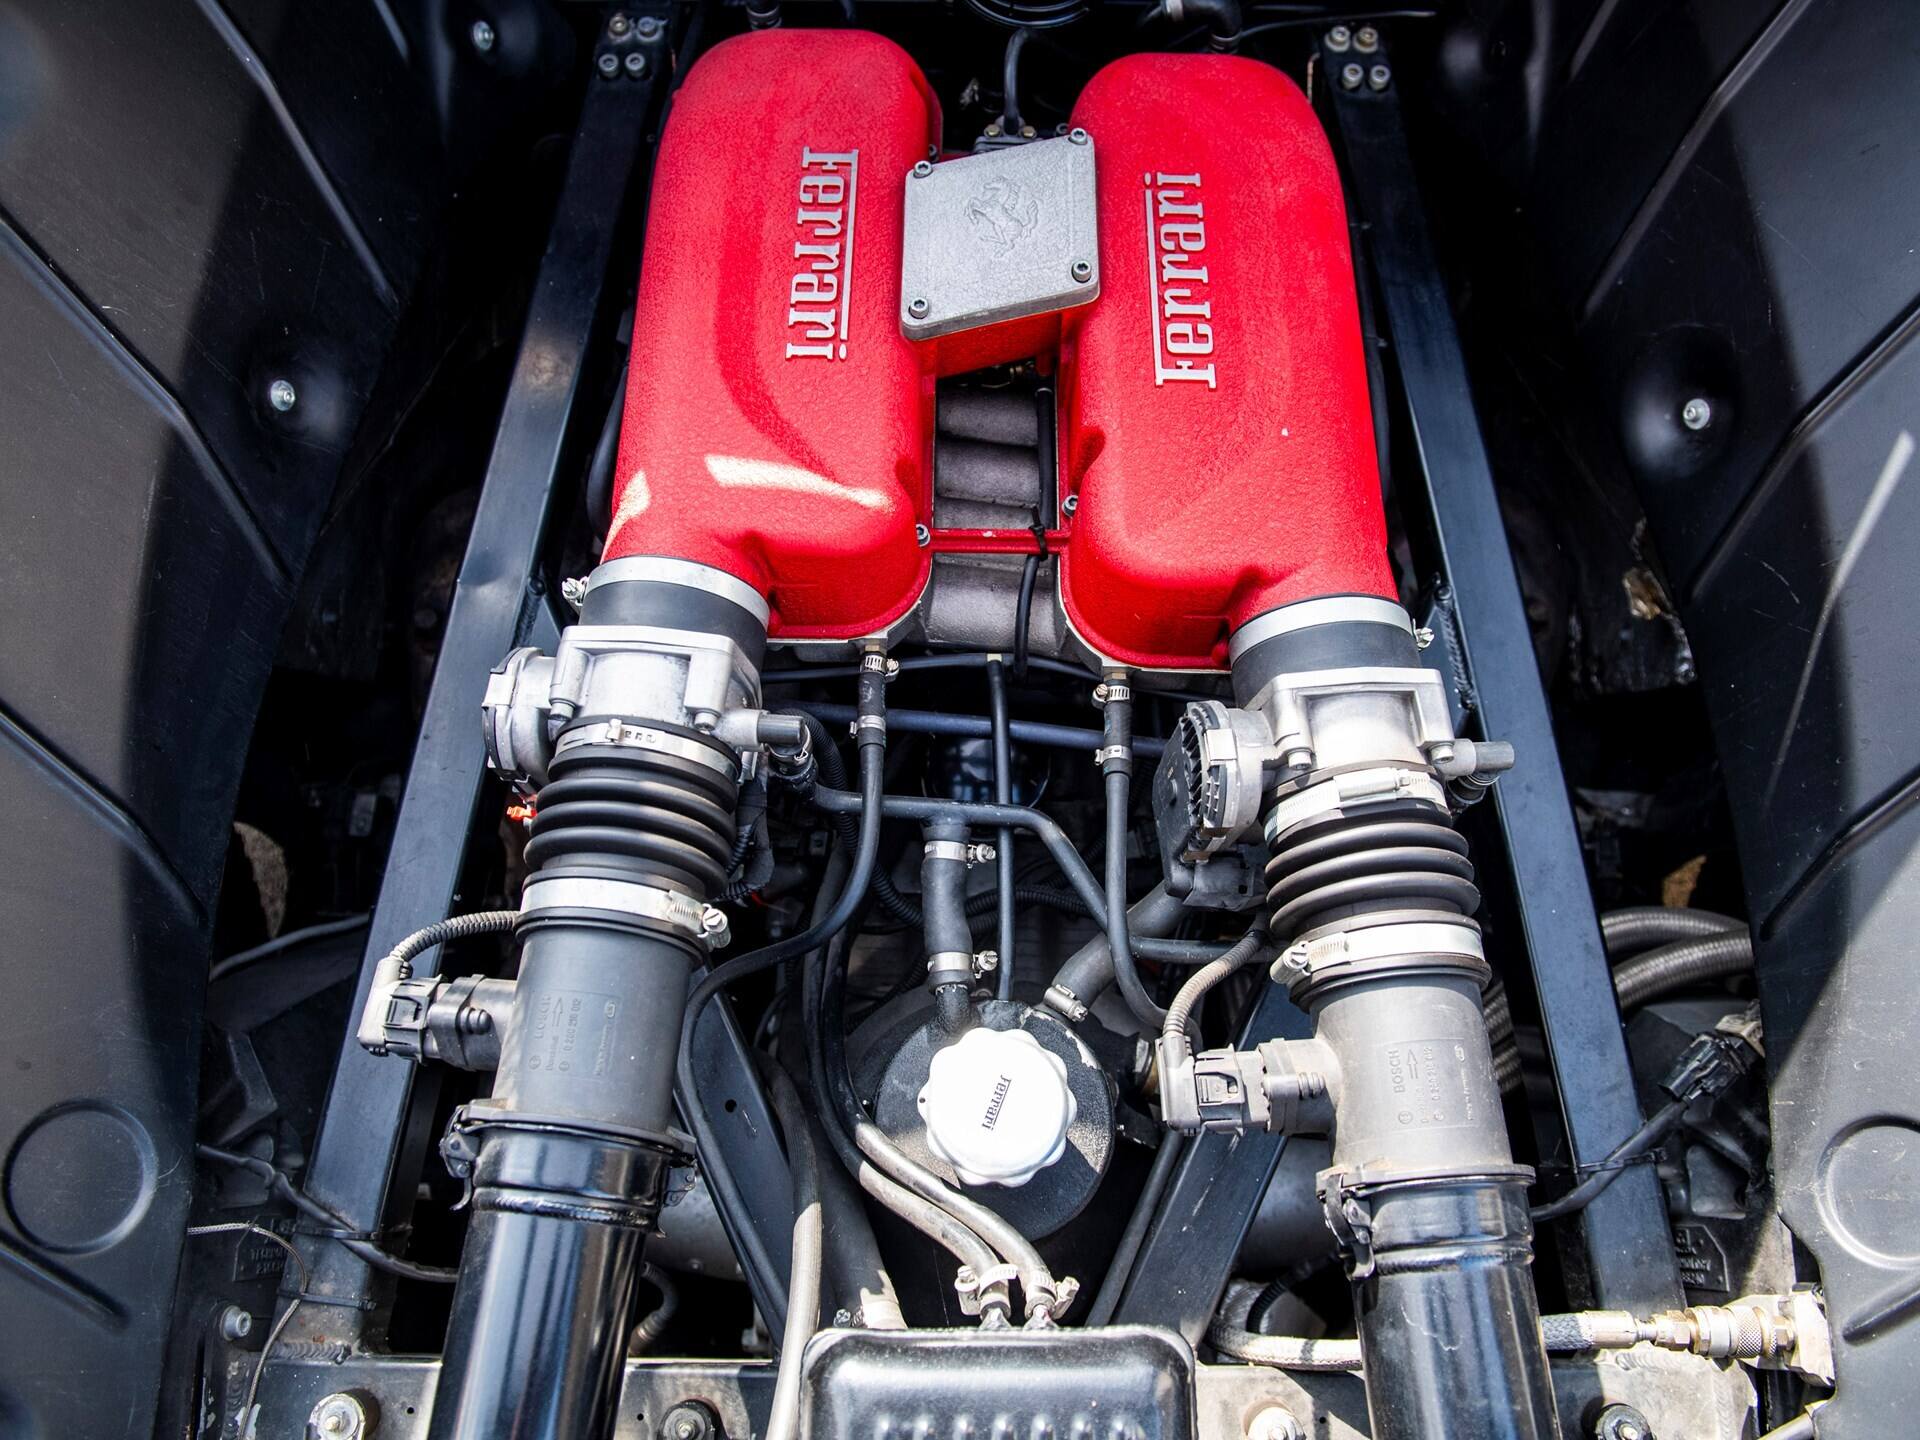 Vallelunga June 13 2021, Fx series racing. Mercedes-Benz engine